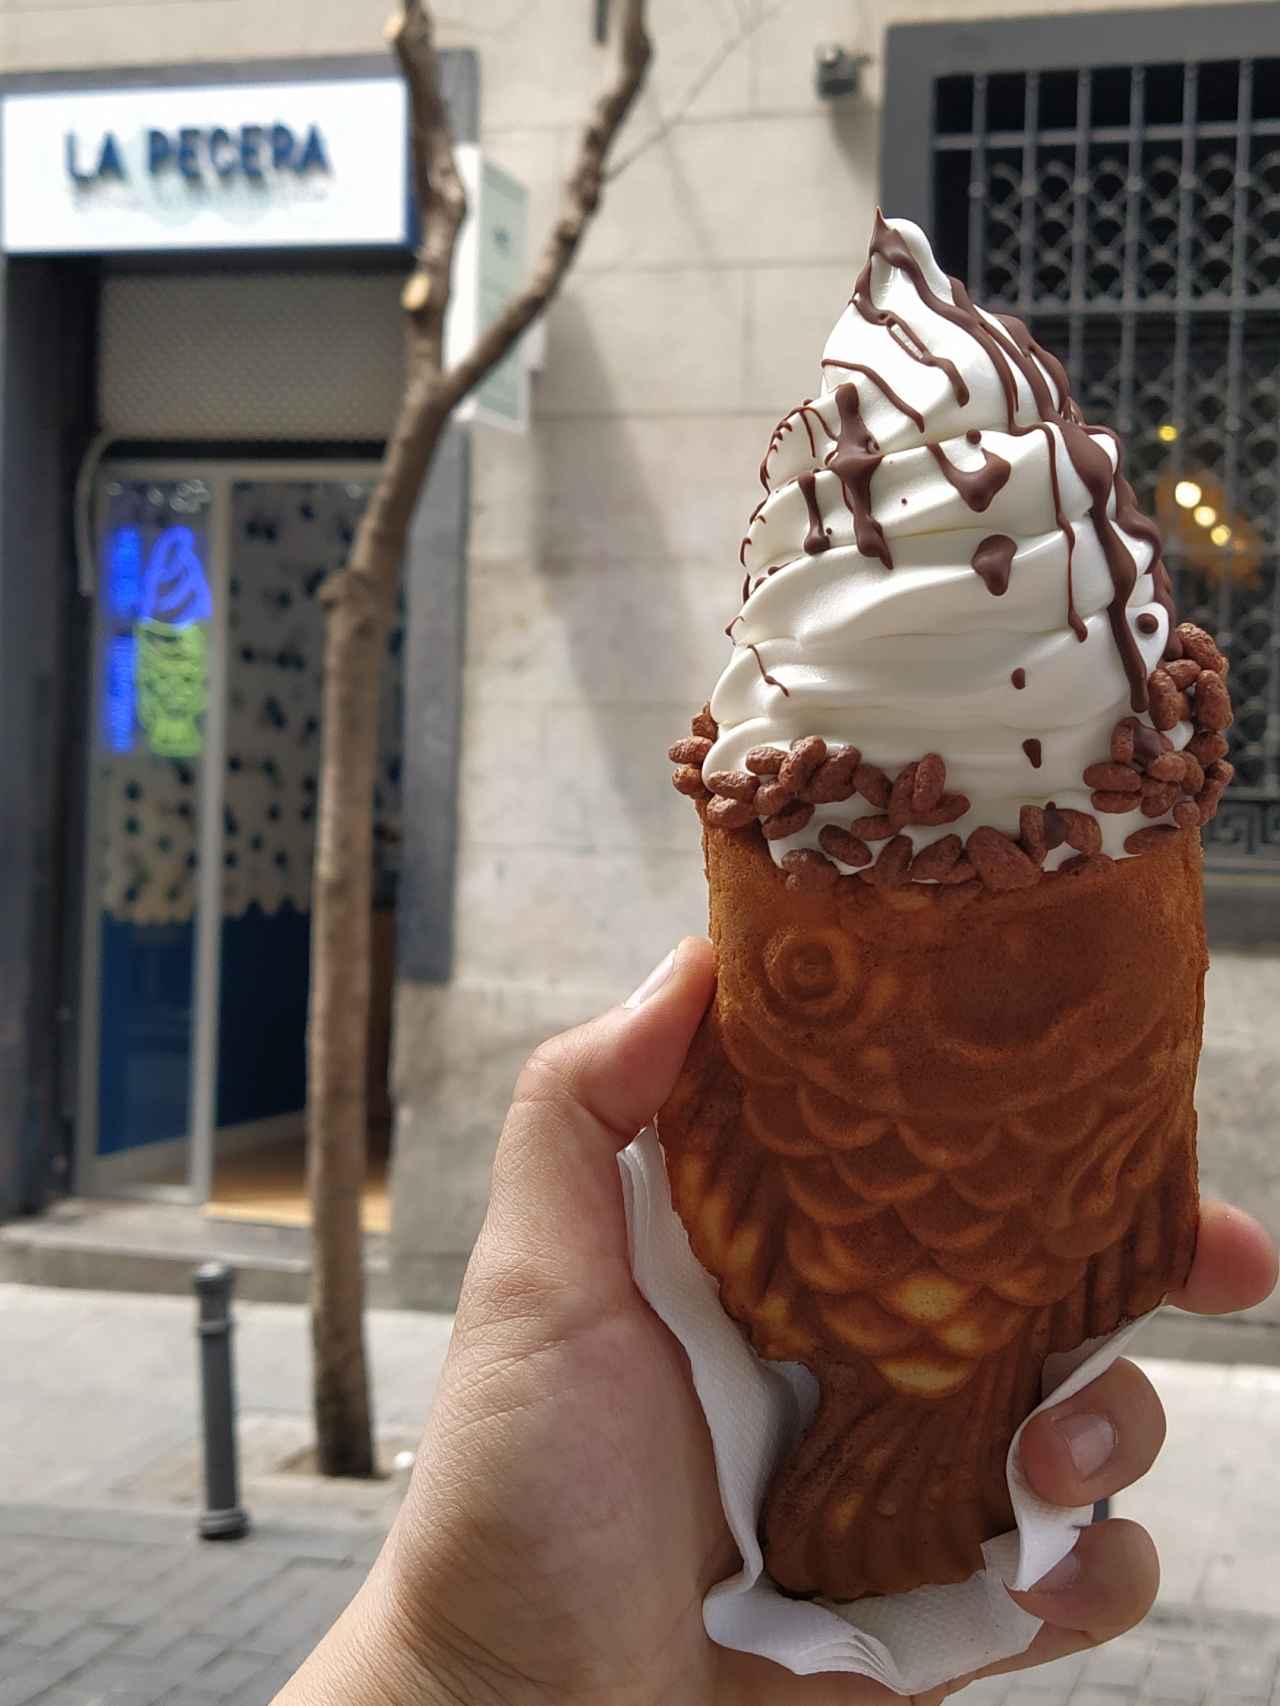 El helado de yogur griego de La Pecera, cuyo cono tiene forma de pez.